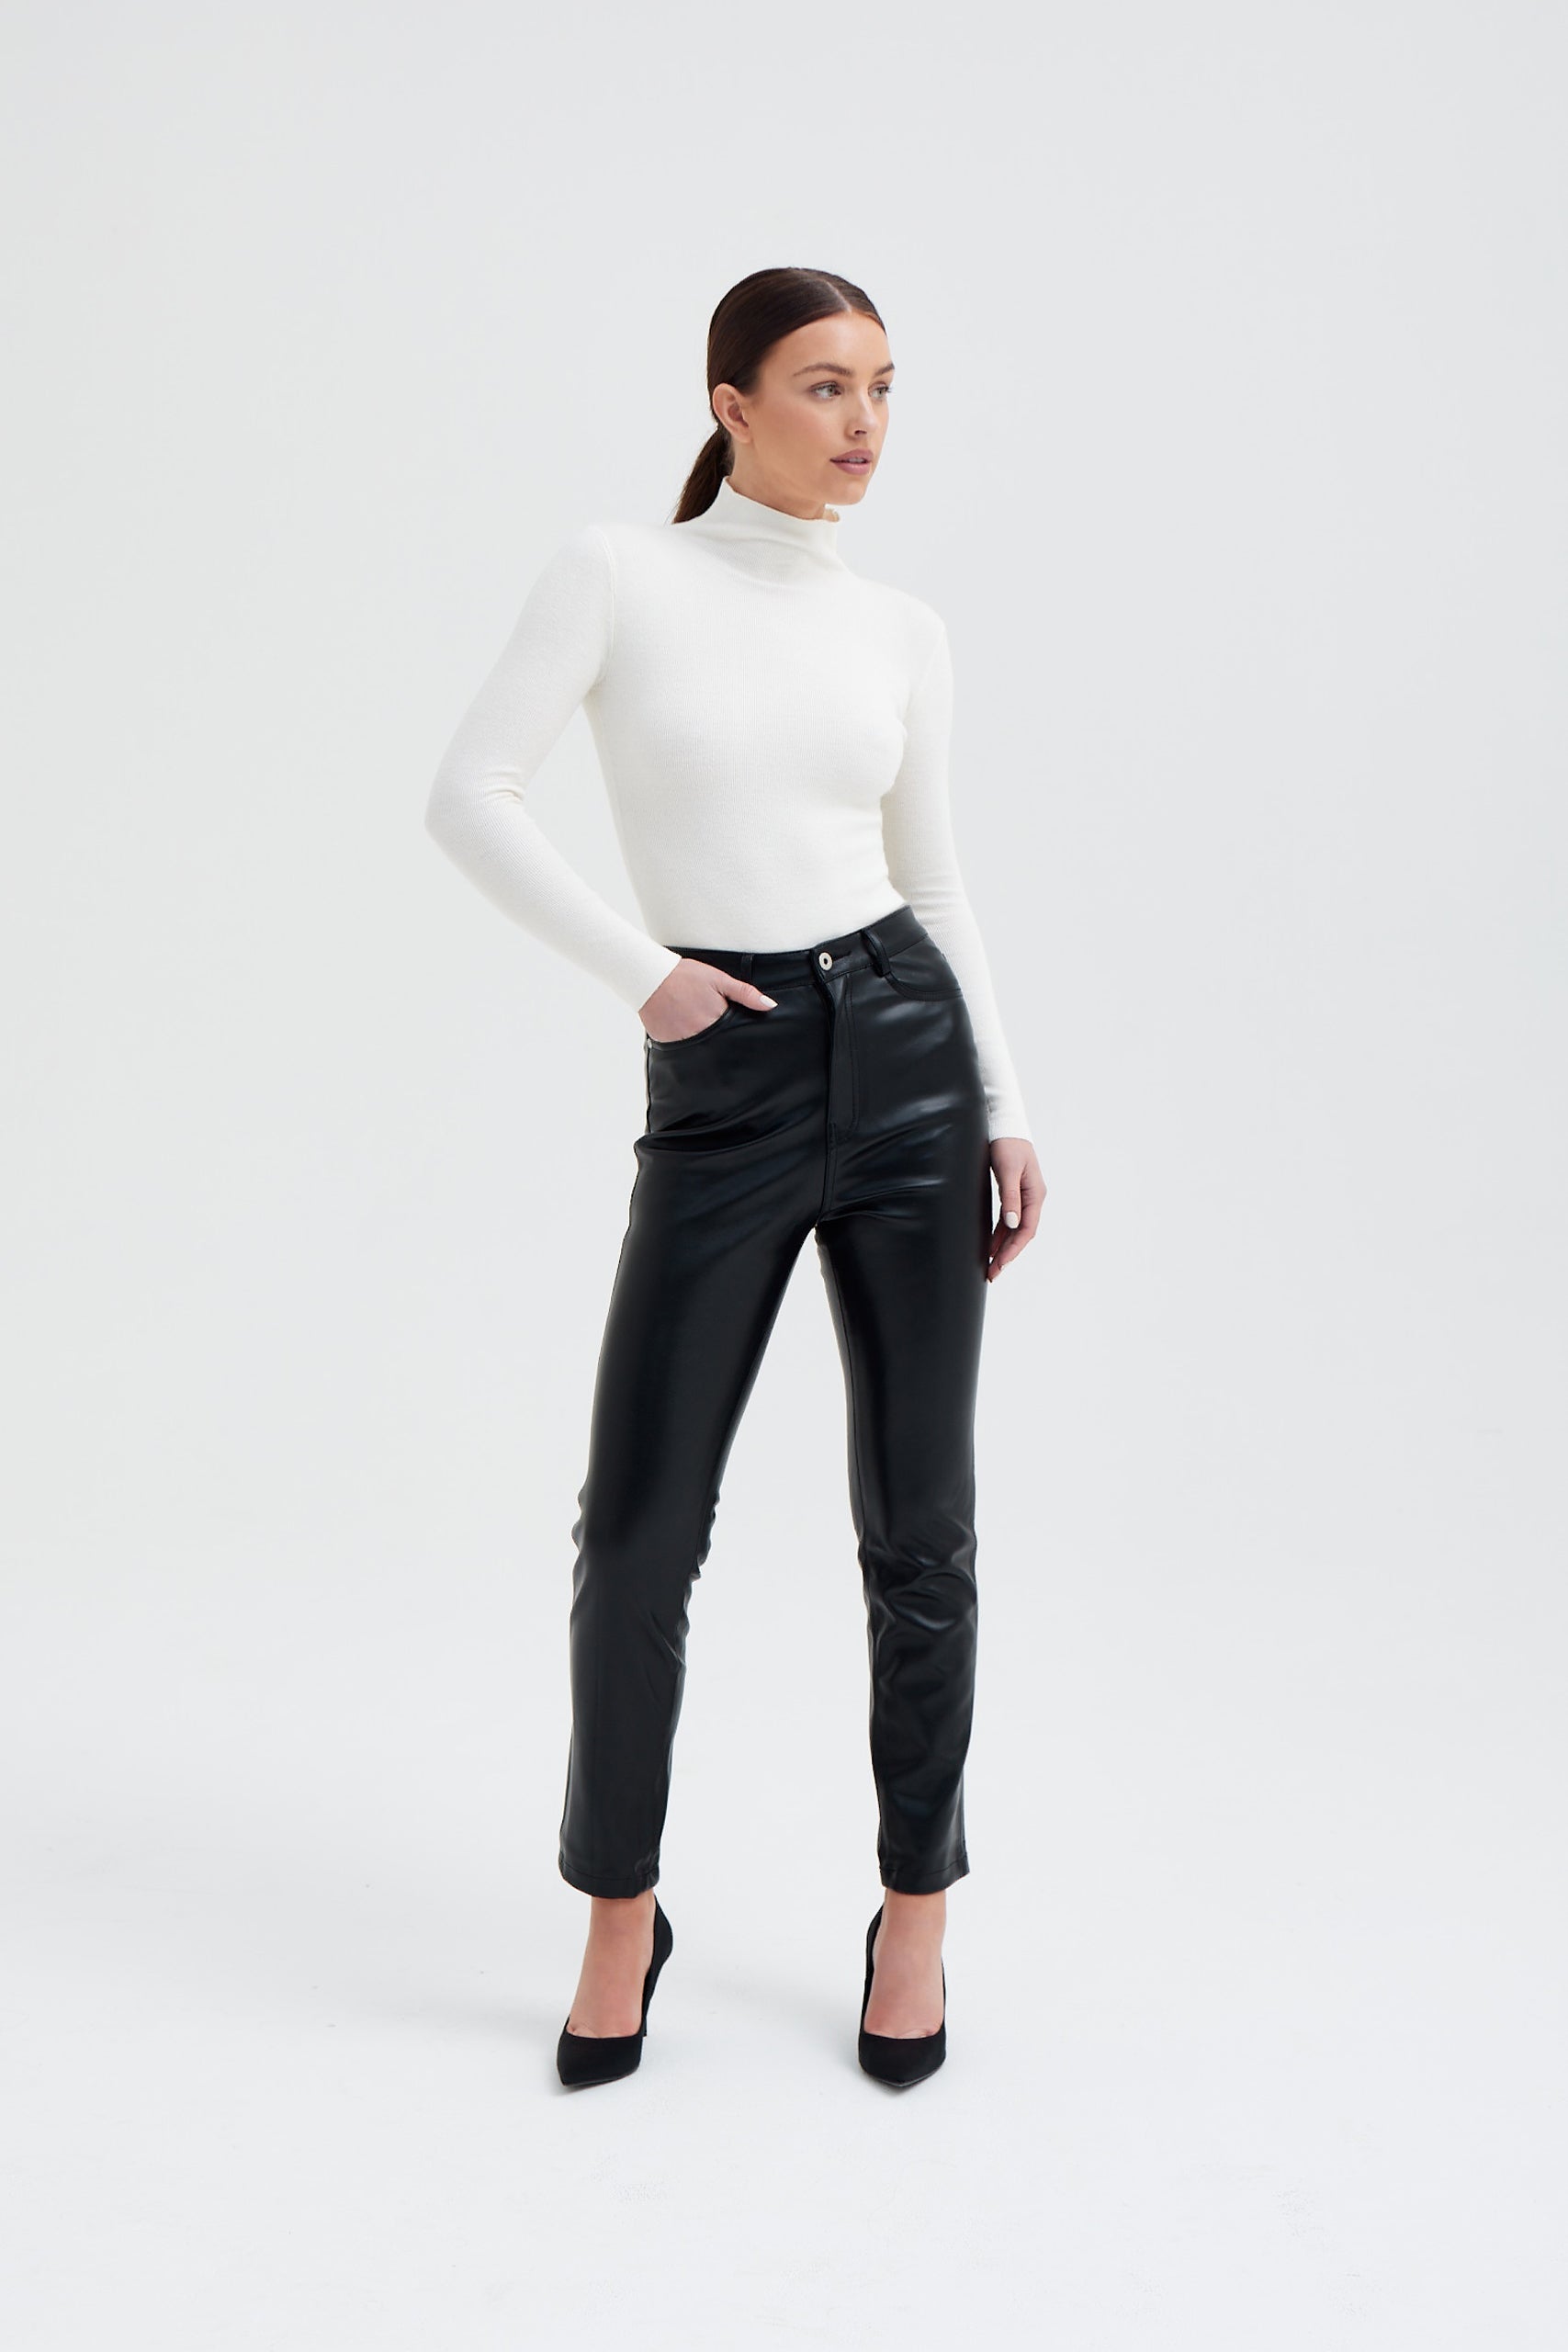 Bess Leather Trouser Black, BOTTOM/TROUSER